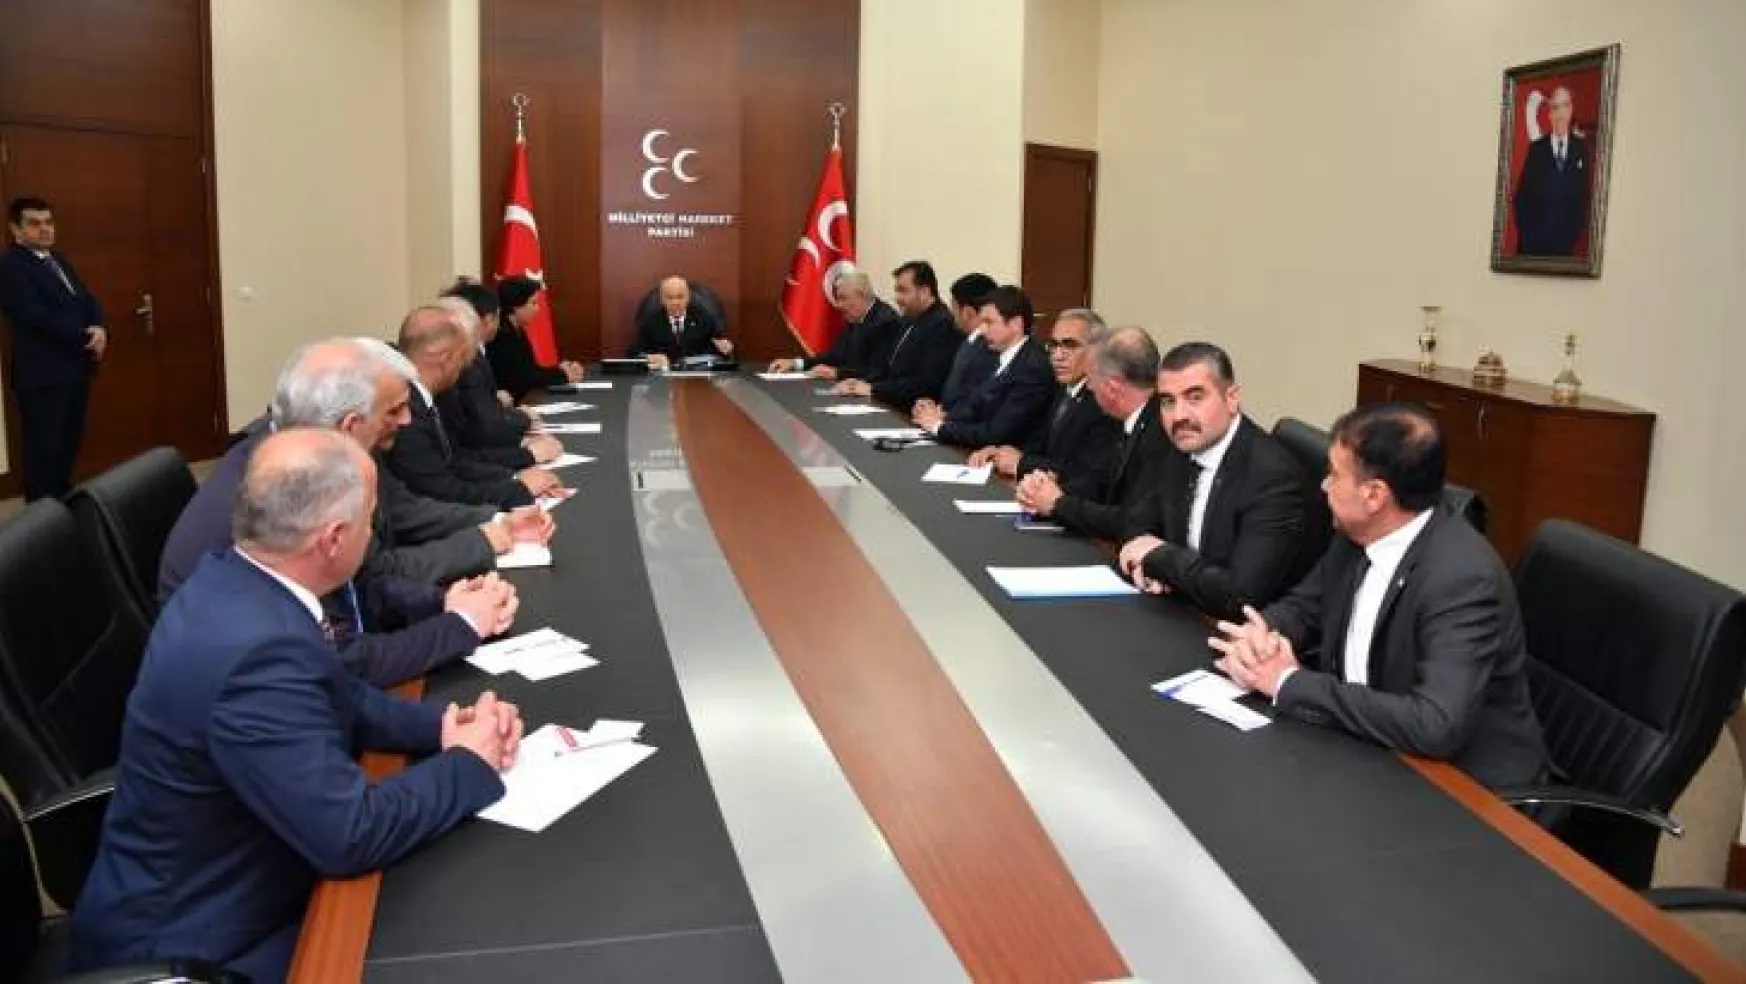 Avşar, 'Ankara'da Verimli Bir Toplantı Gerçekleştirdik'